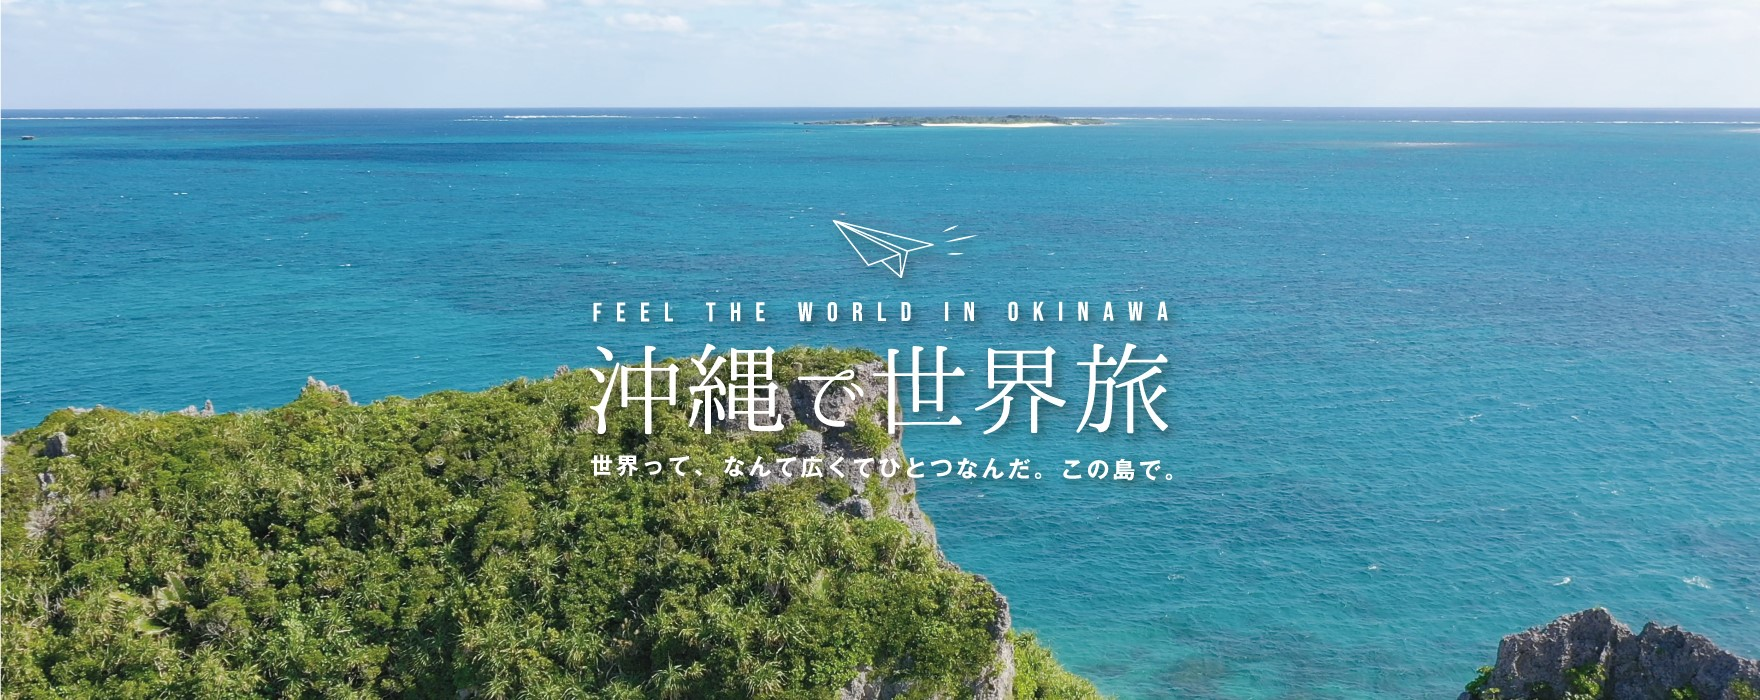 沖縄で世界旅